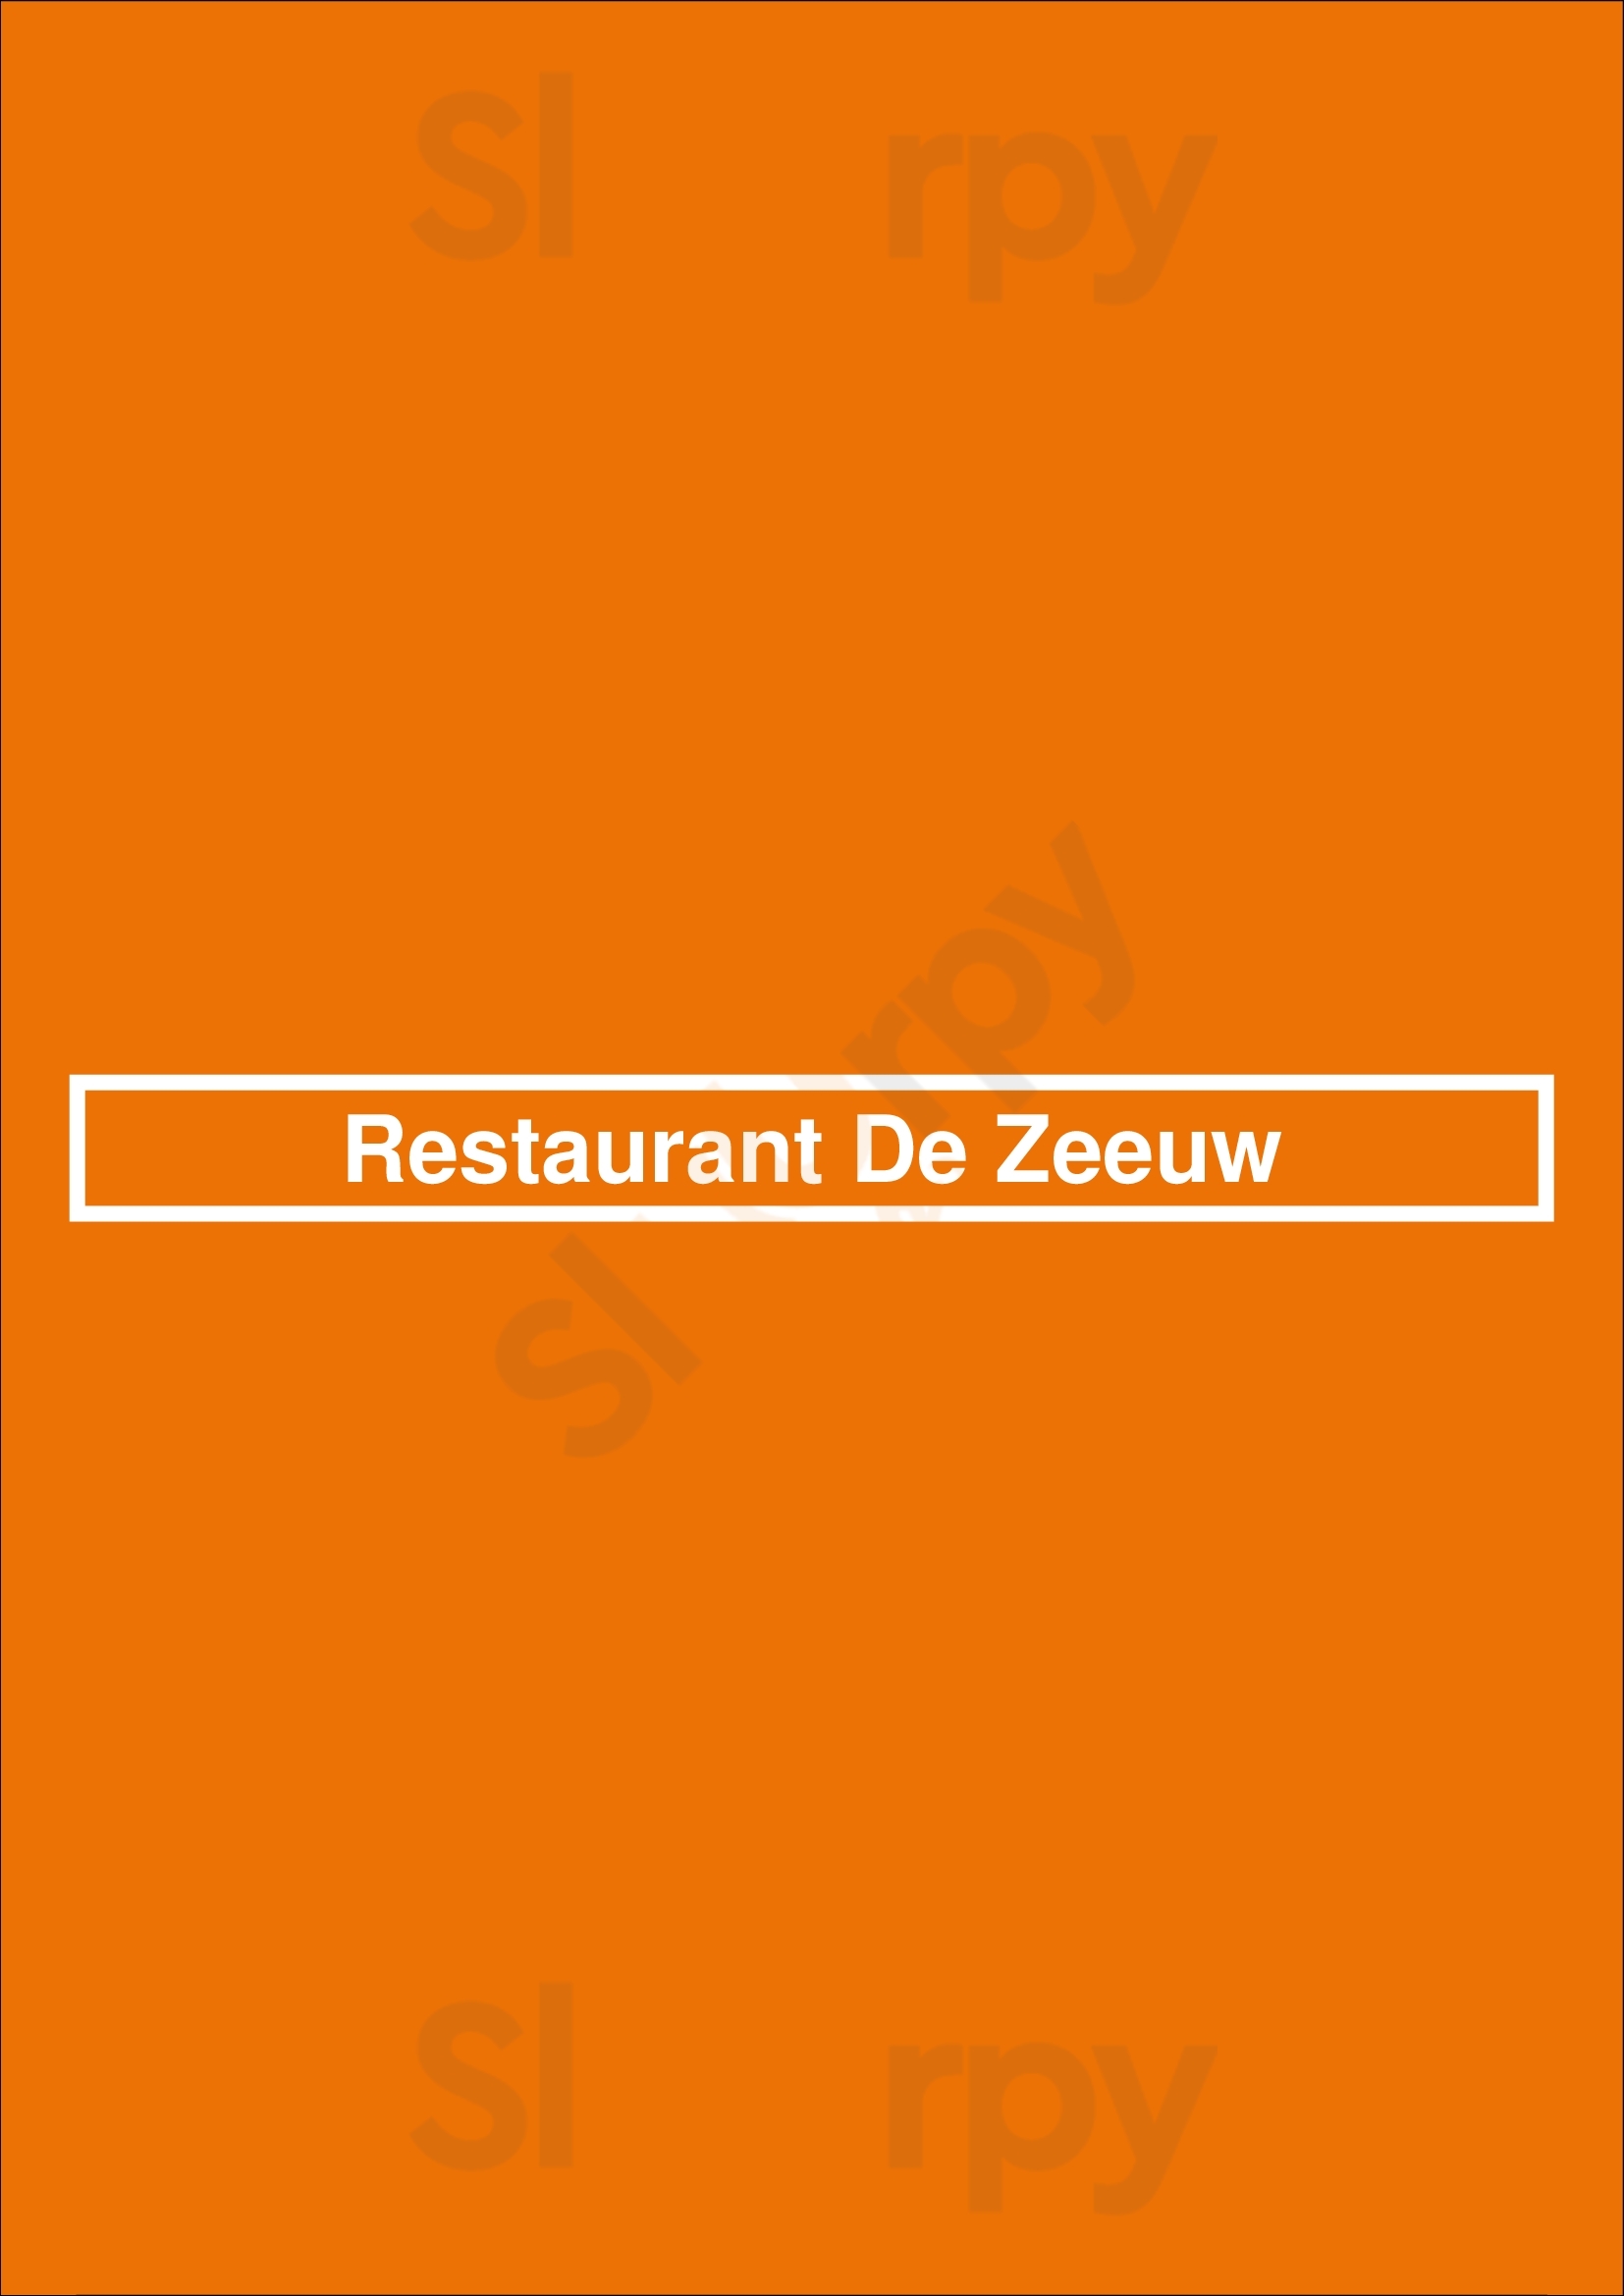 Restaurant De Zeeuw Haarlem Menu - 1